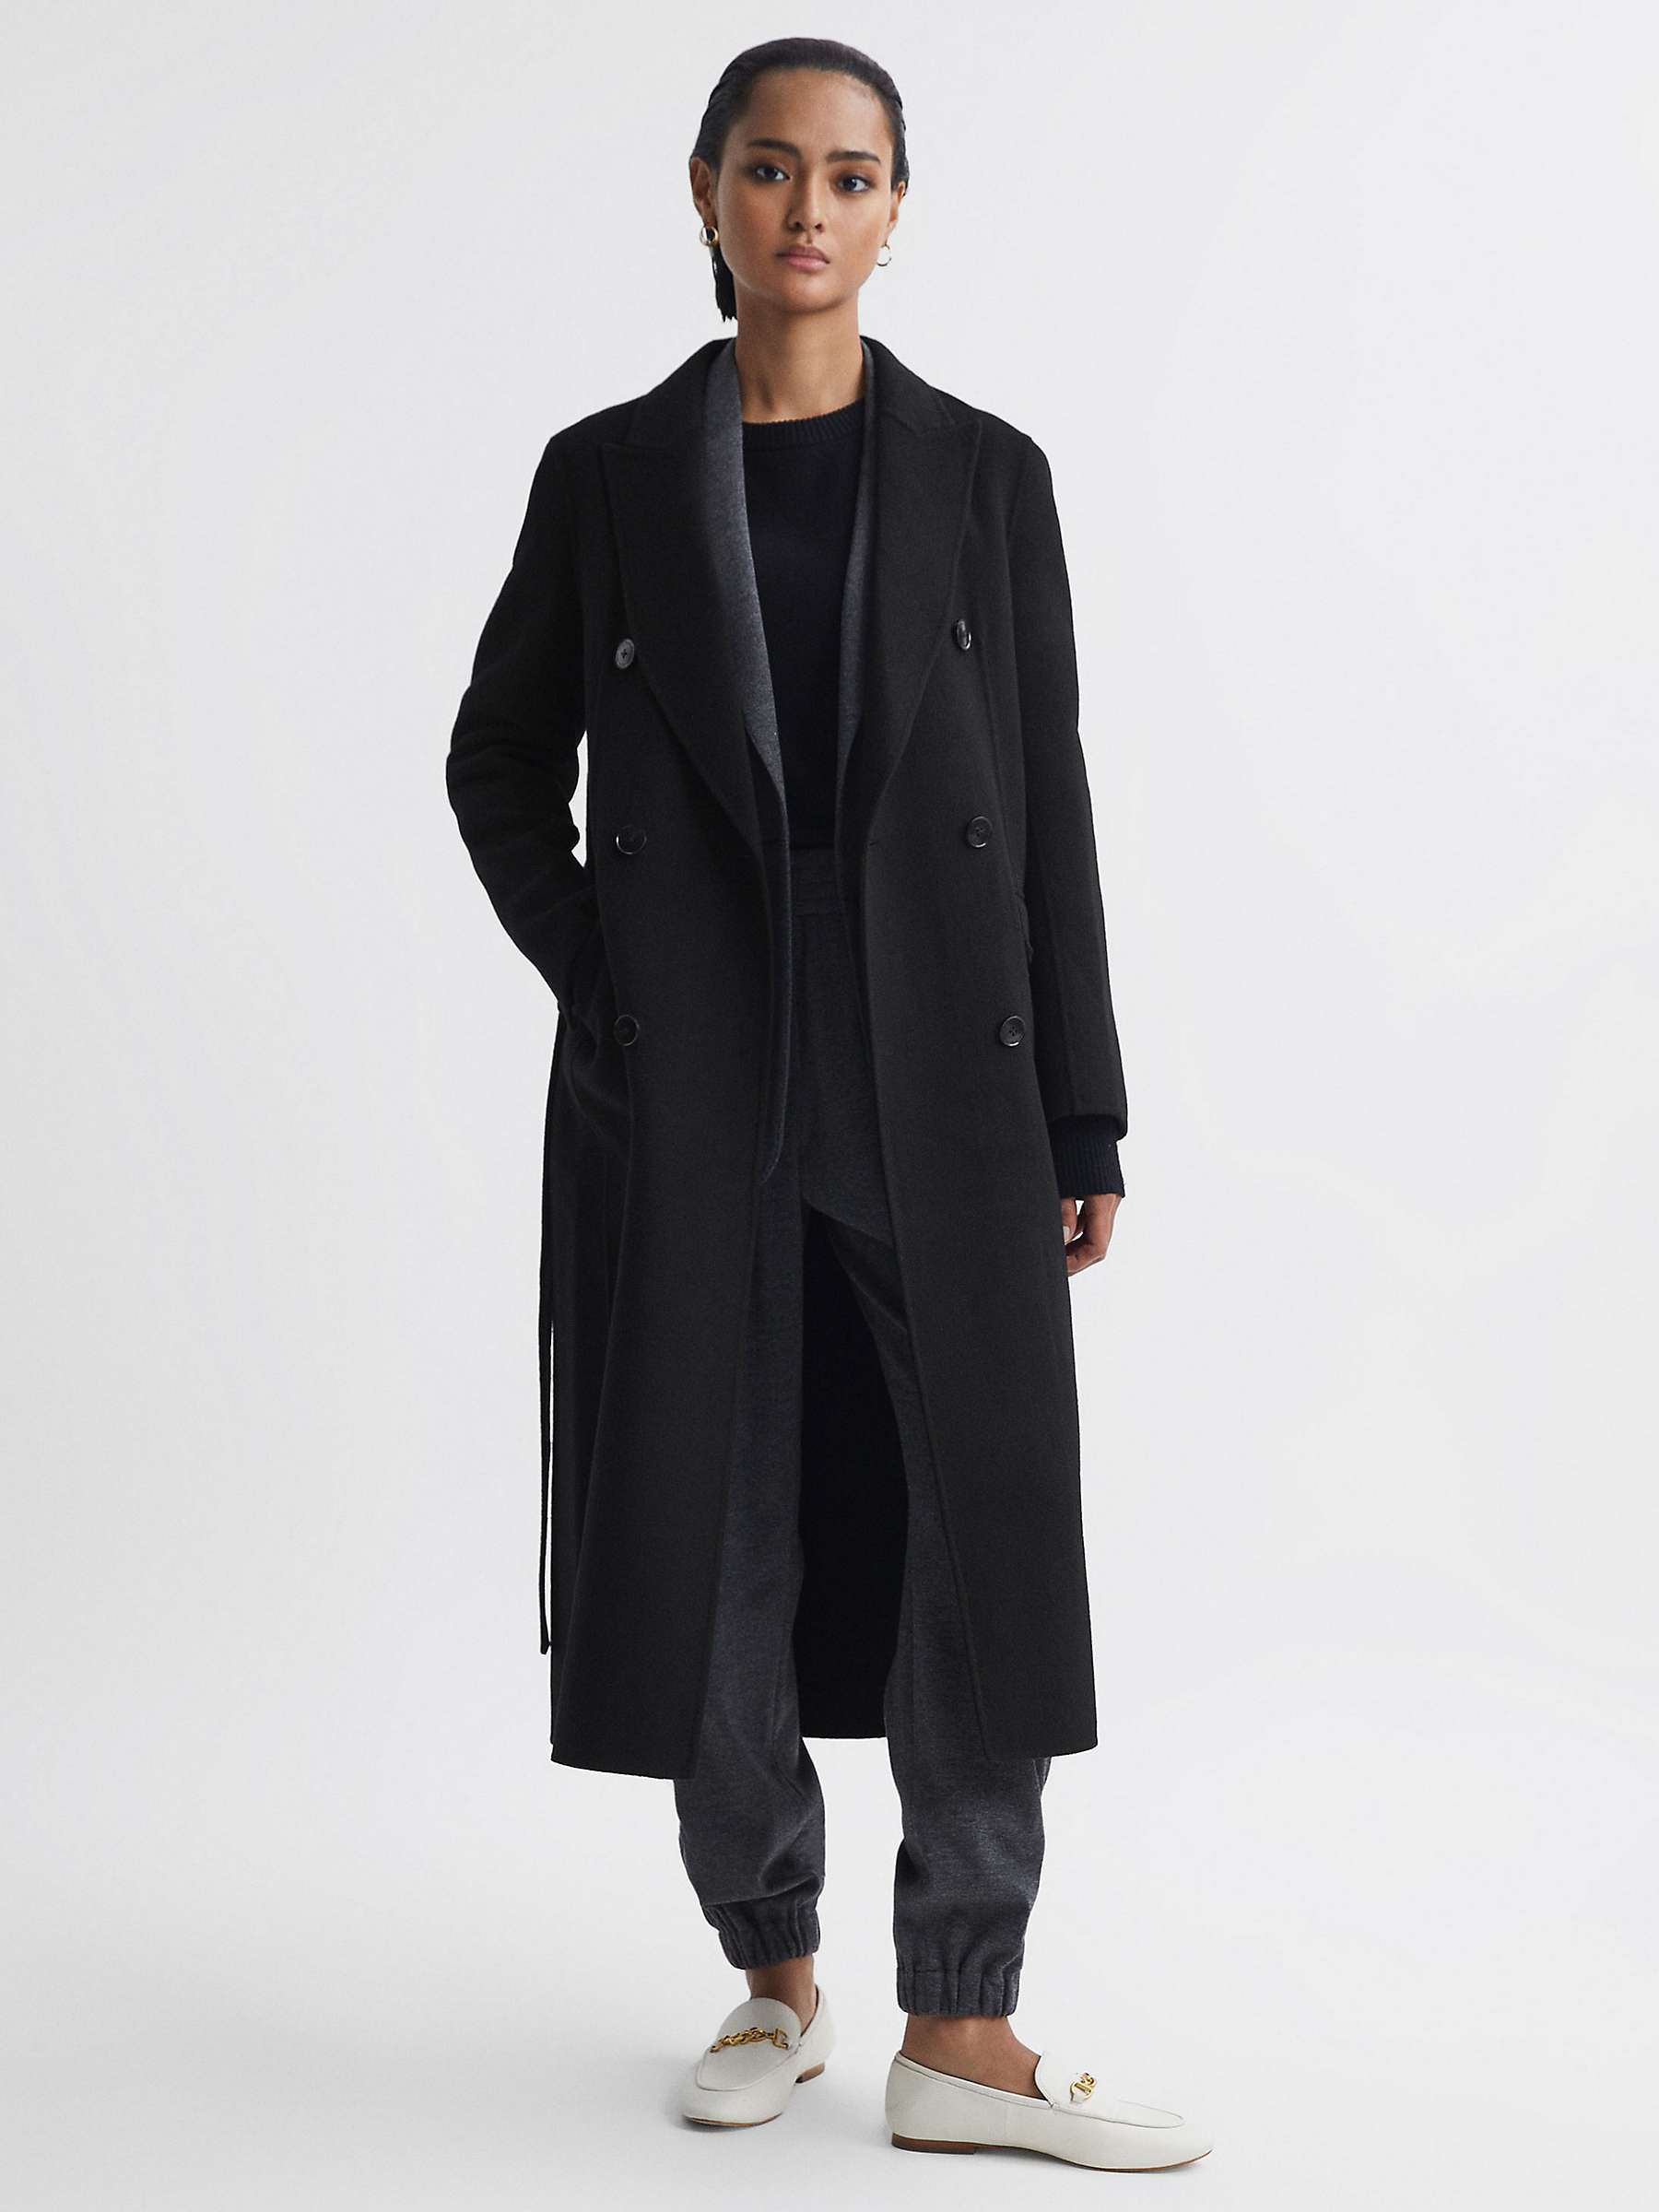 Buy Reiss Arla Wool Blend Belted Coat, Black Online at johnlewis.com